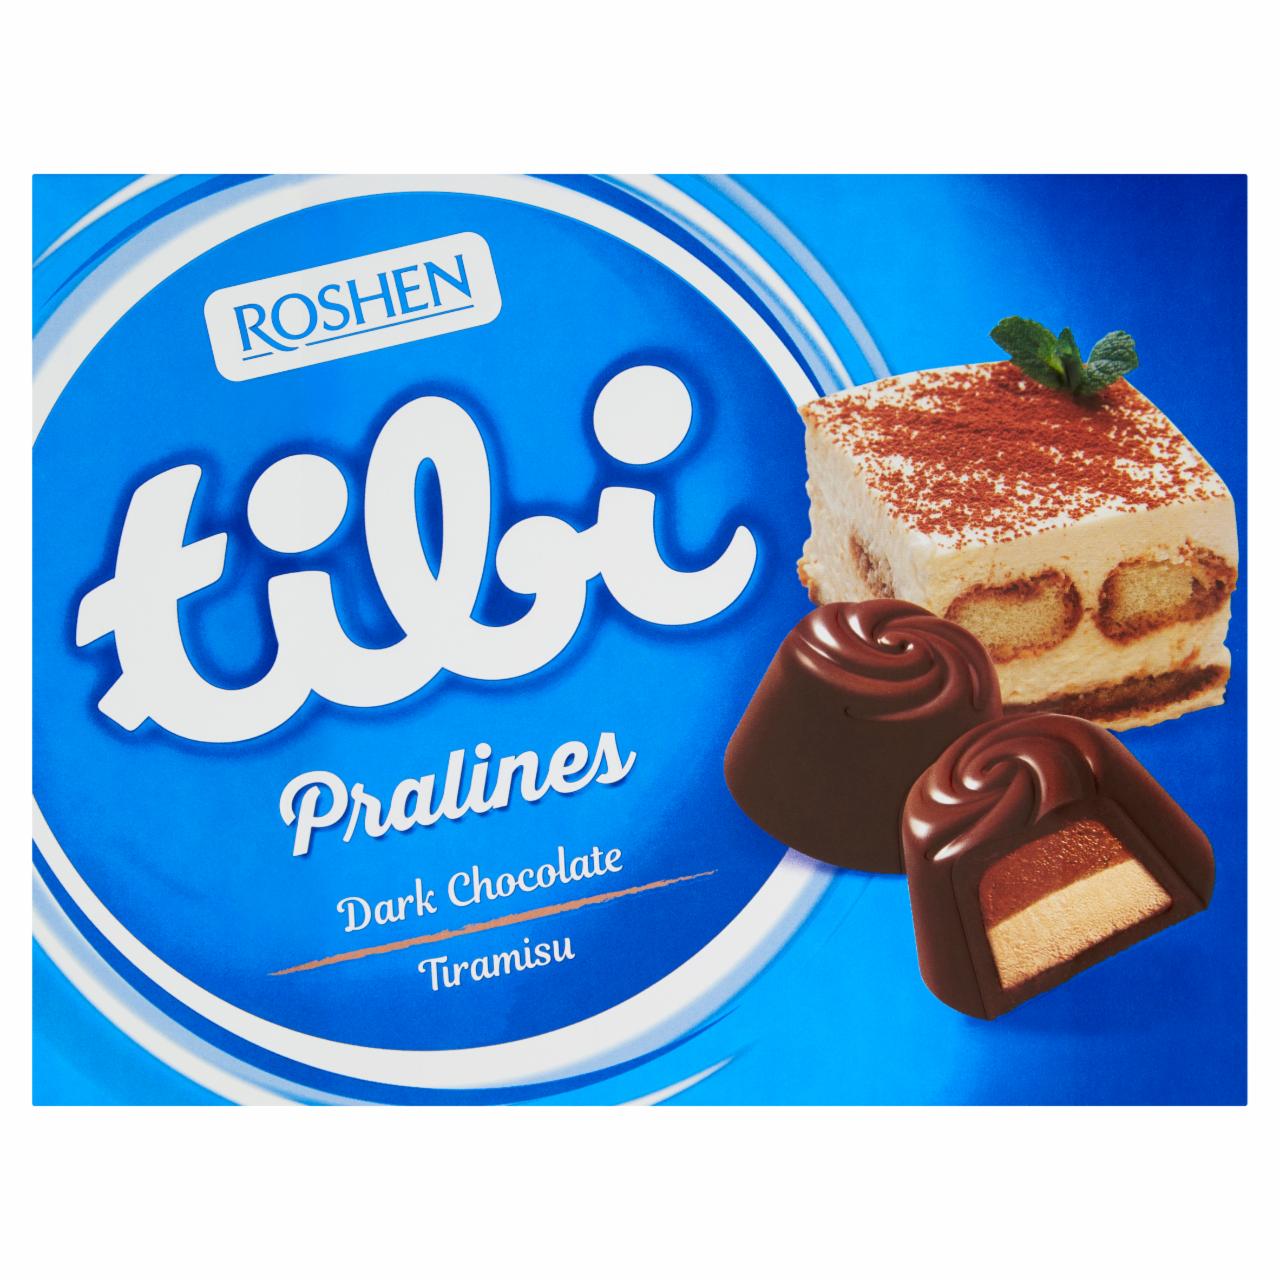 Képek - Tibi Pralines tiramisu ízű krémmel töltött étcsokoládés praliné 120 g